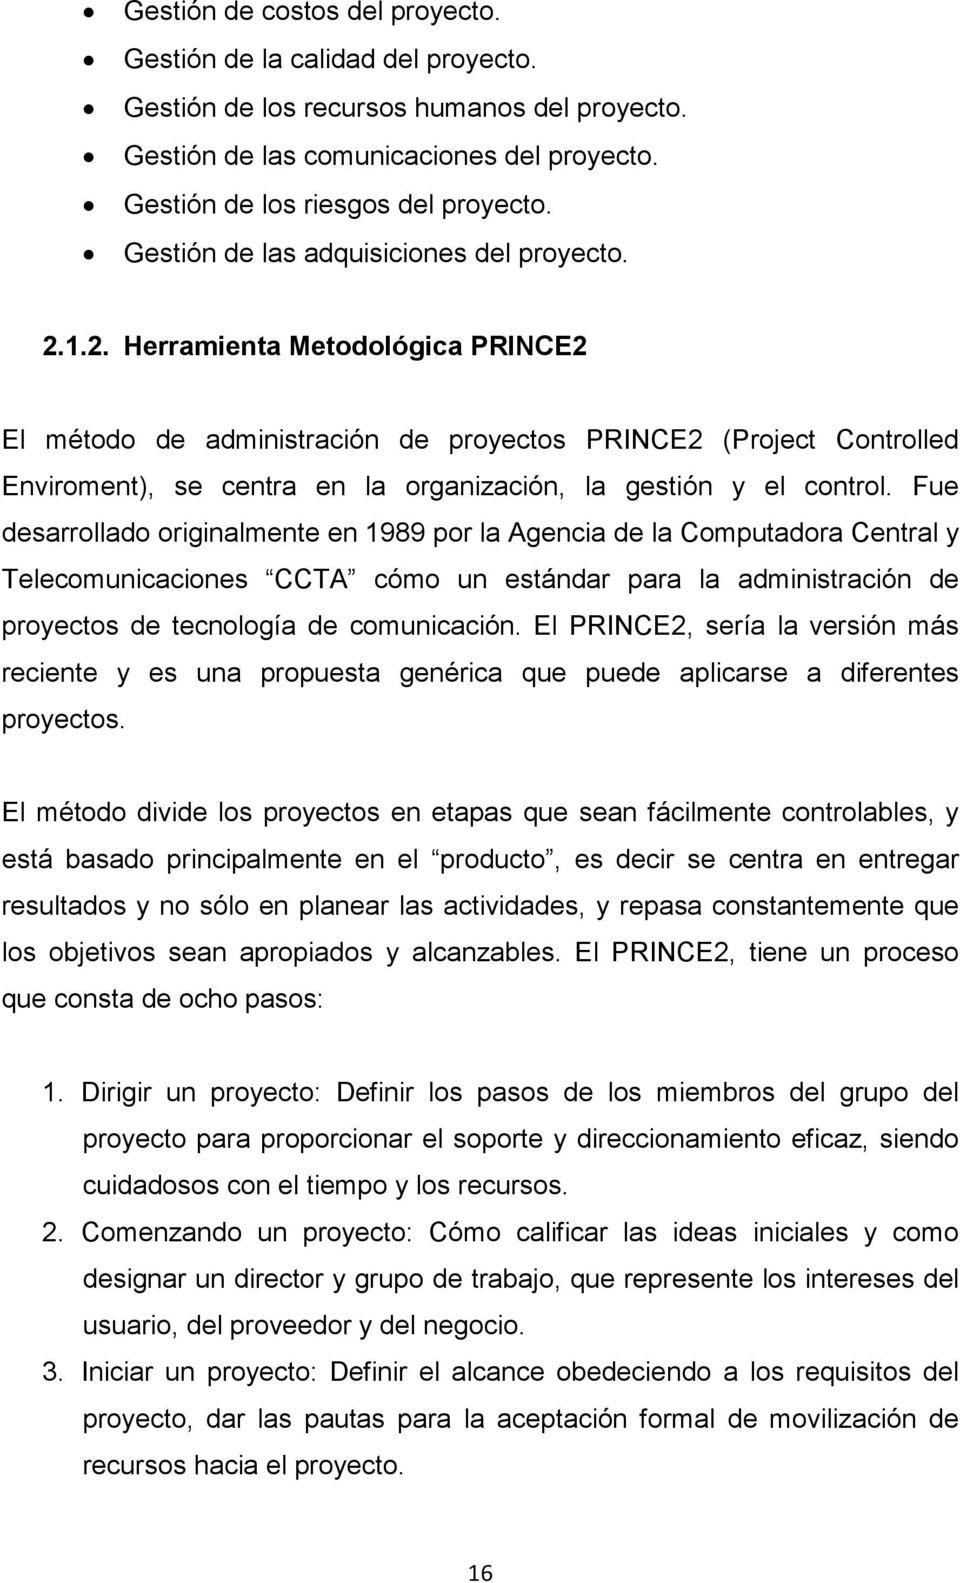 1.2. Herramienta Metodológica PRINCE2 El método de administración de proyectos PRINCE2 (Project Controlled Enviroment), se centra en la organización, la gestión y el control.